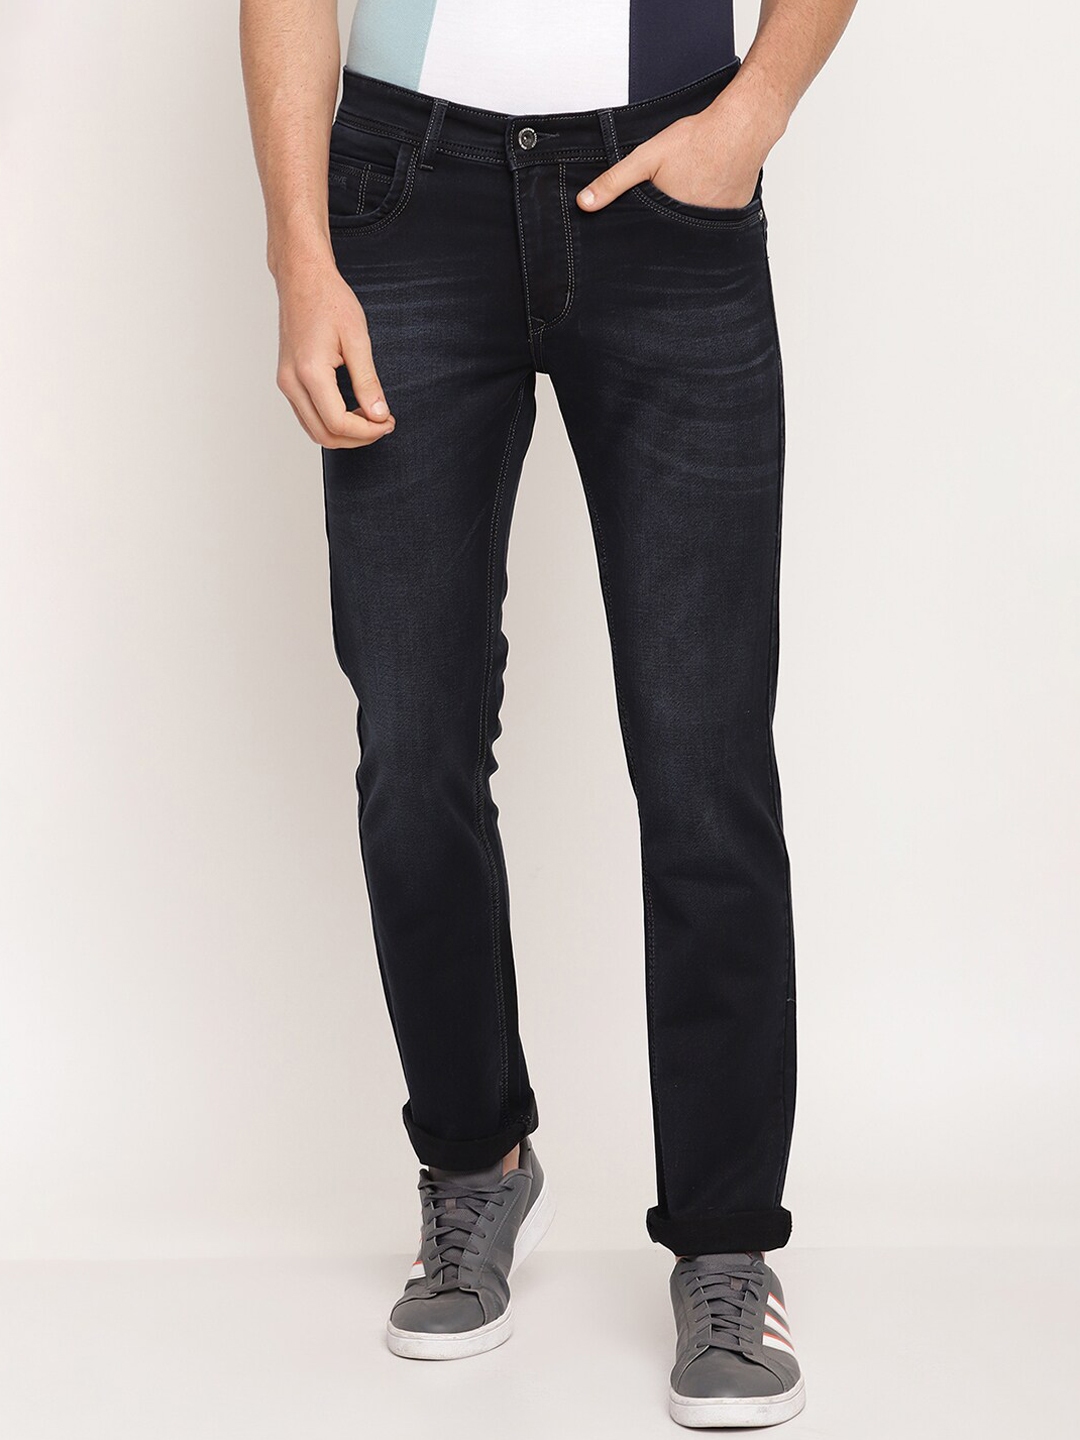 Buy Octave Men Navy Blue Regular Fit Jeans - Jeans for Men 17336188 ...